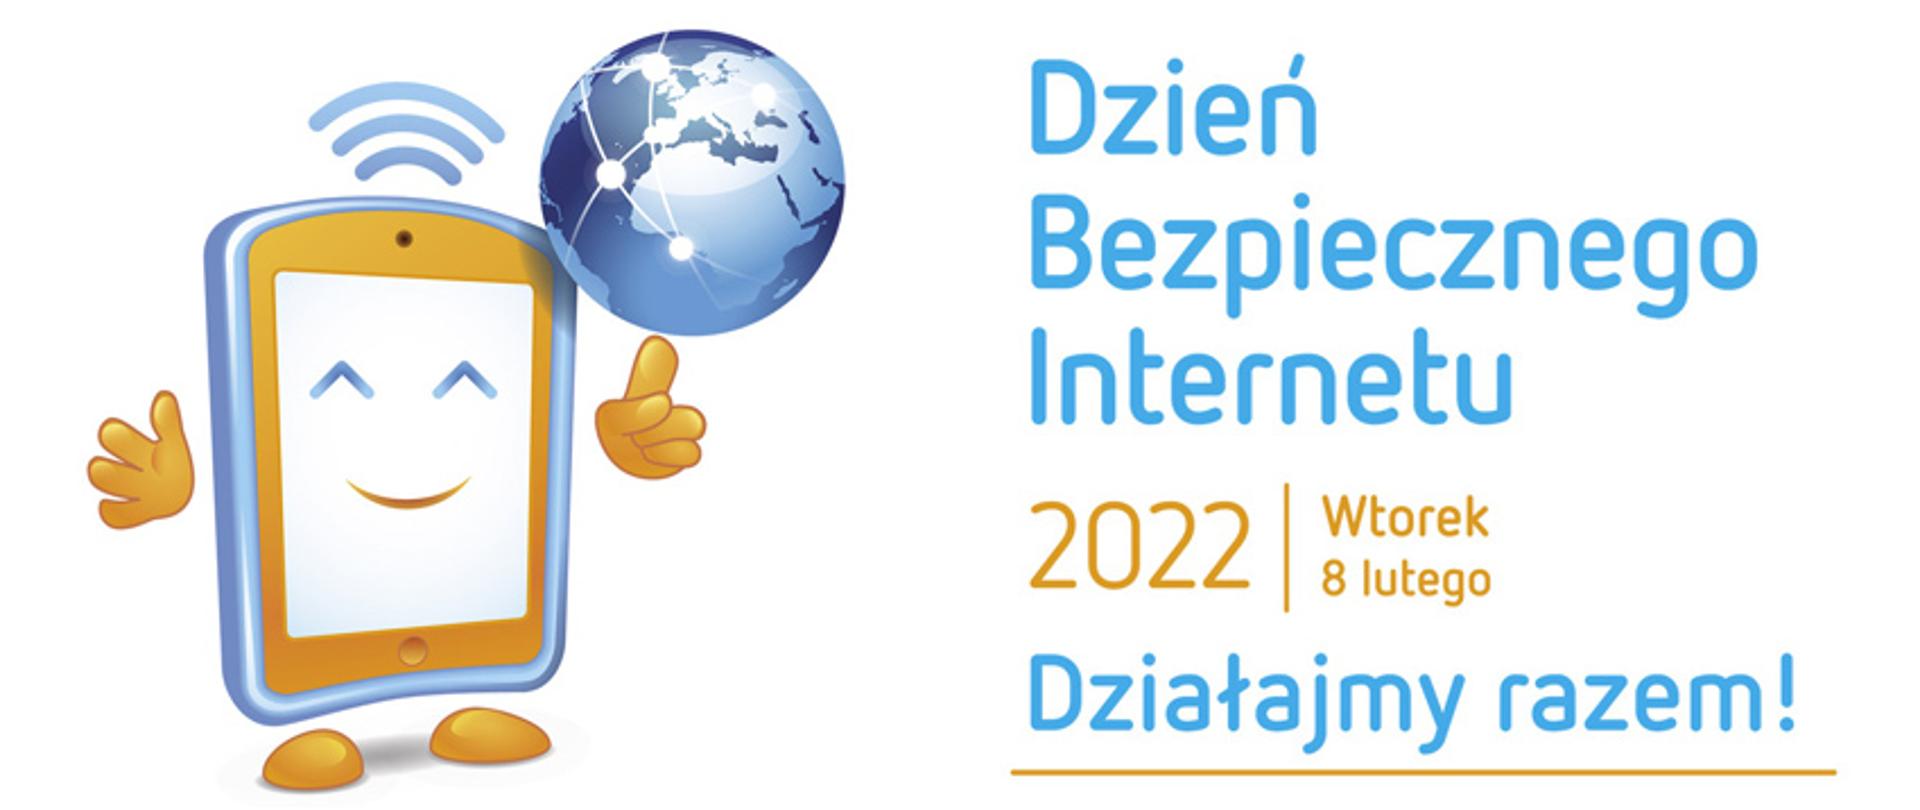 Dzień Bezpiecznego Internetu - 08.02.2022